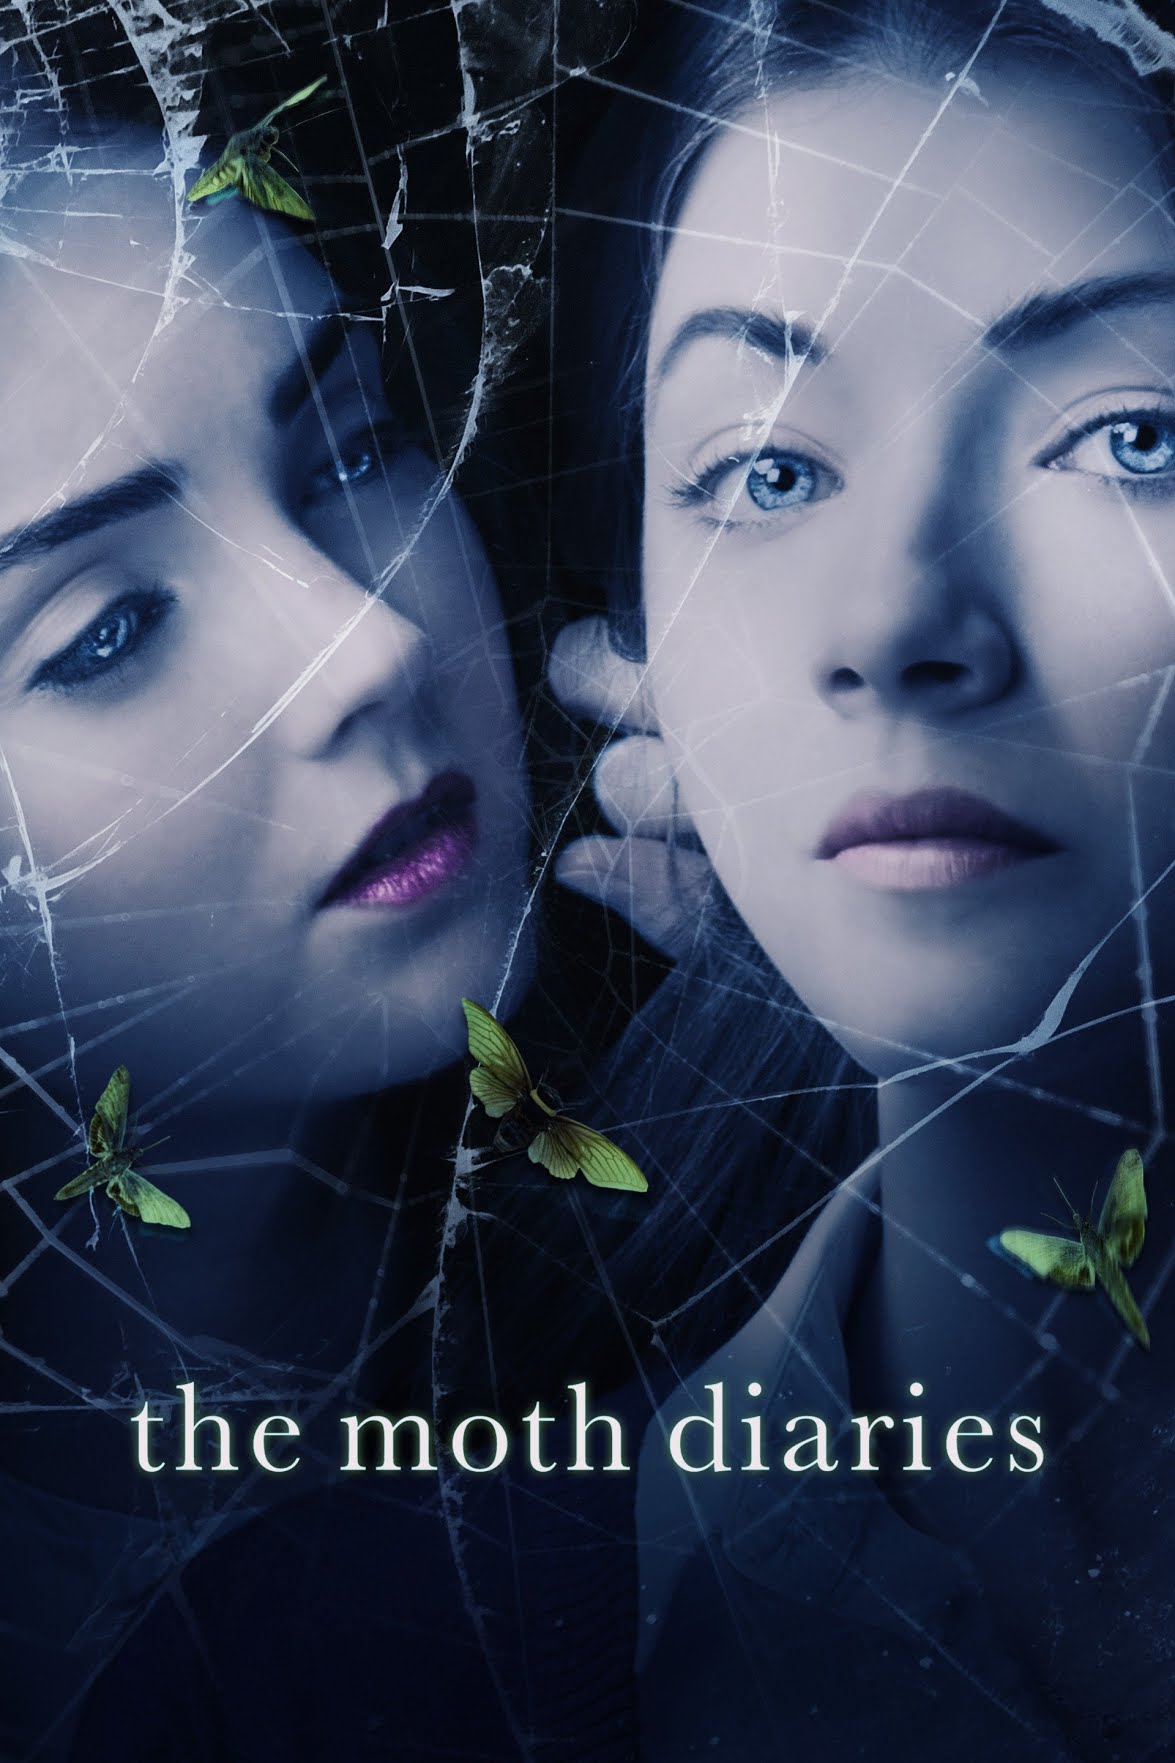 The Moth Diaries [HD] (2011)